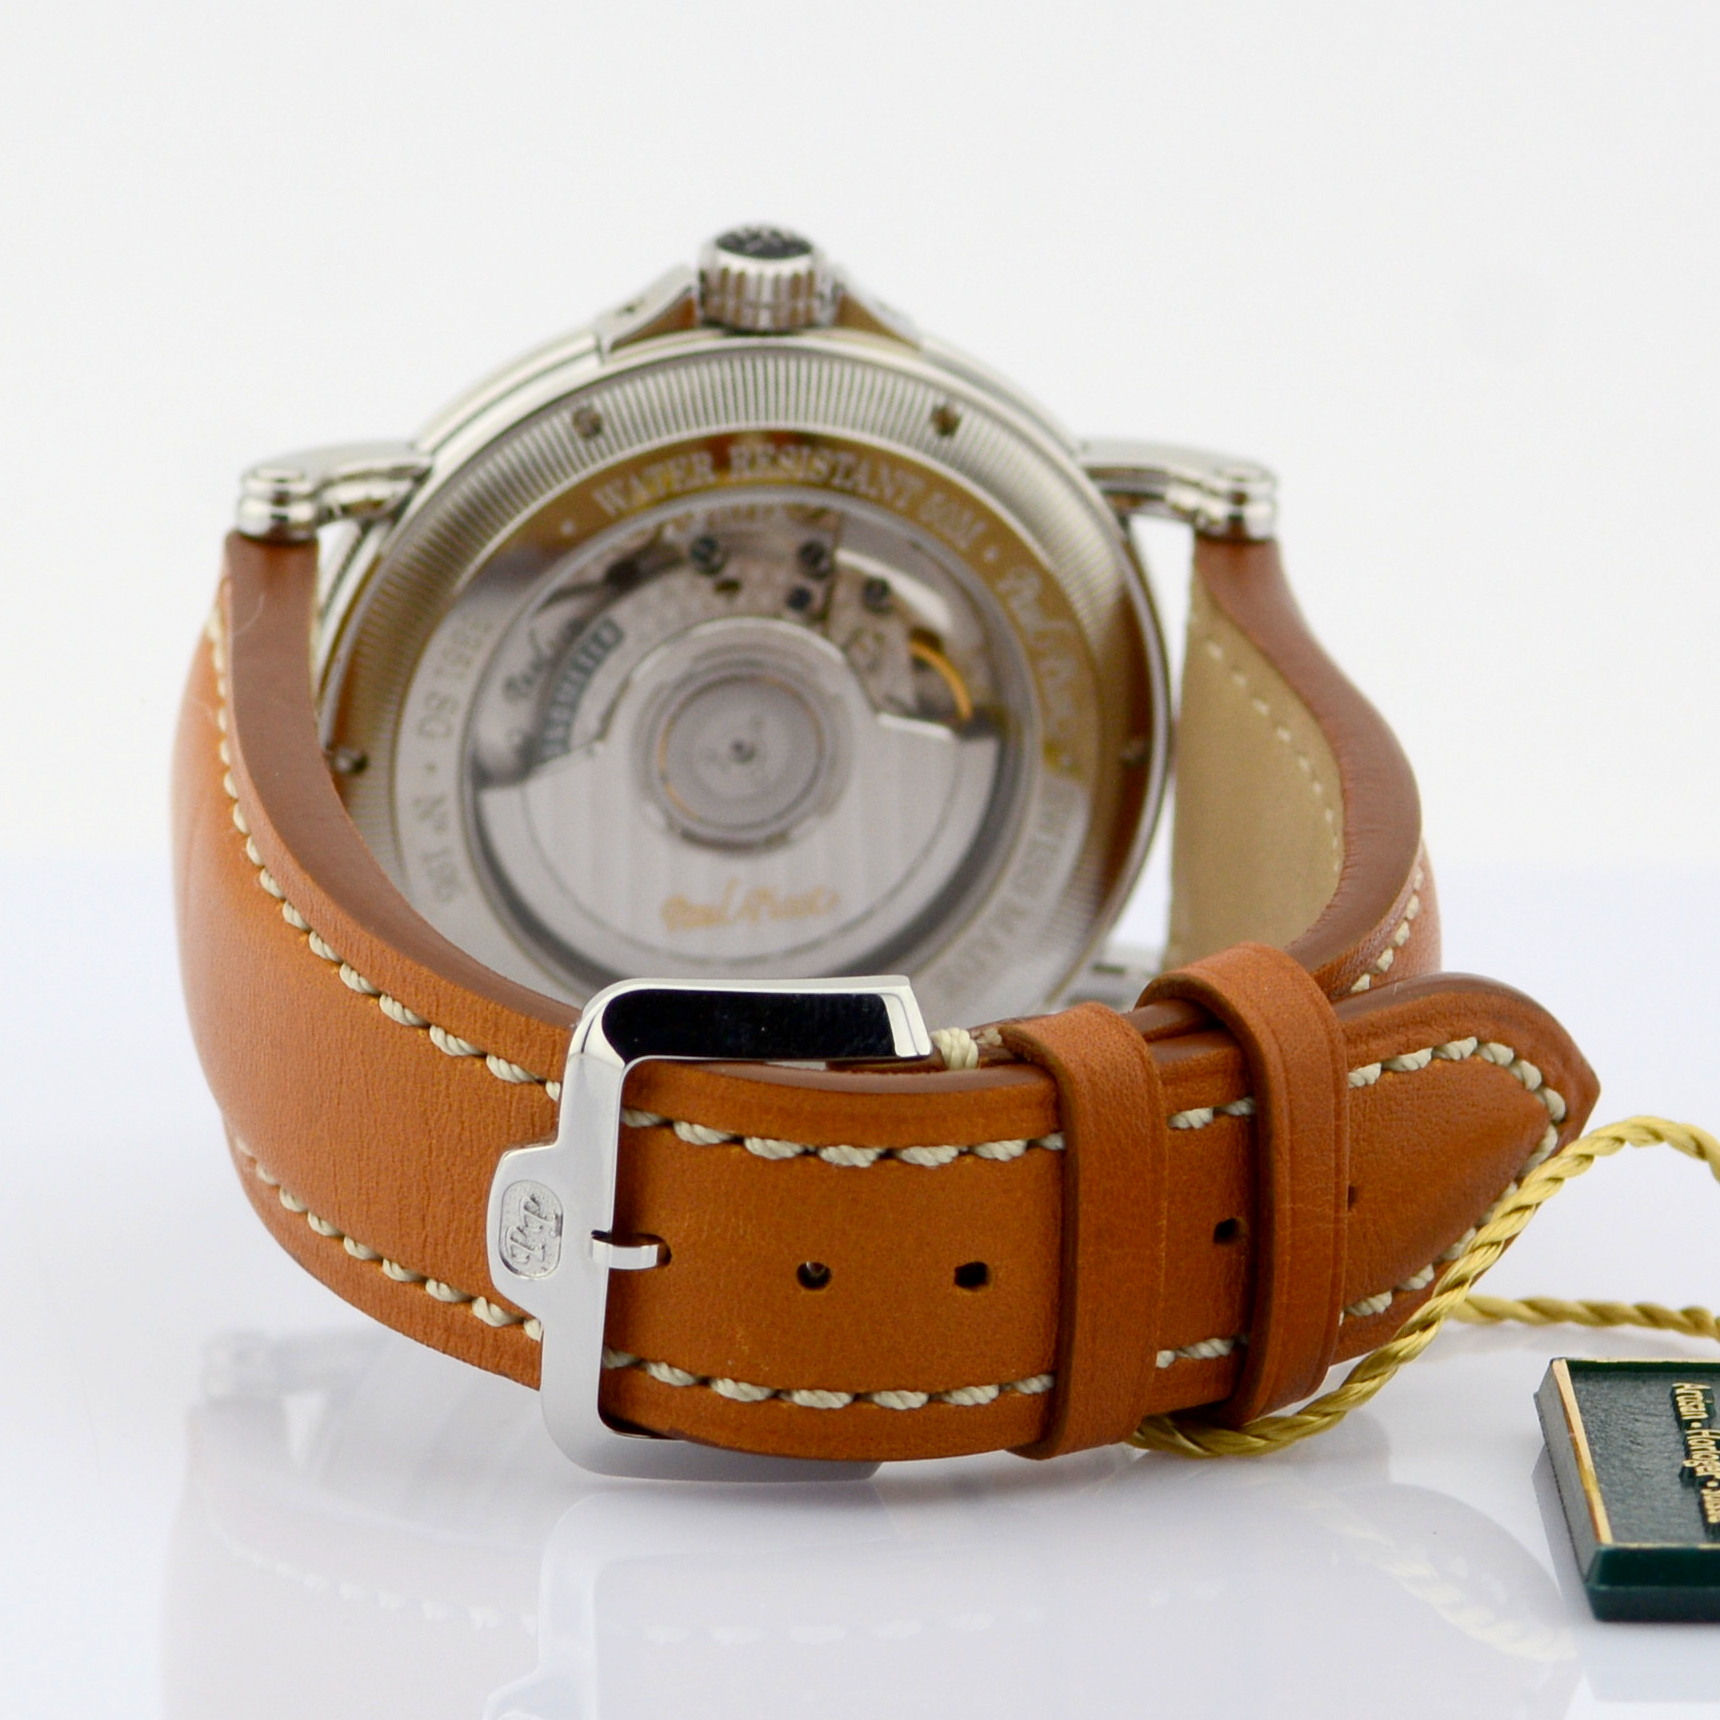 Paul Picot / 3351 SG Atelier Diamond (NEW) - Gentlmen's Steel Wrist Watch - Image 4 of 6